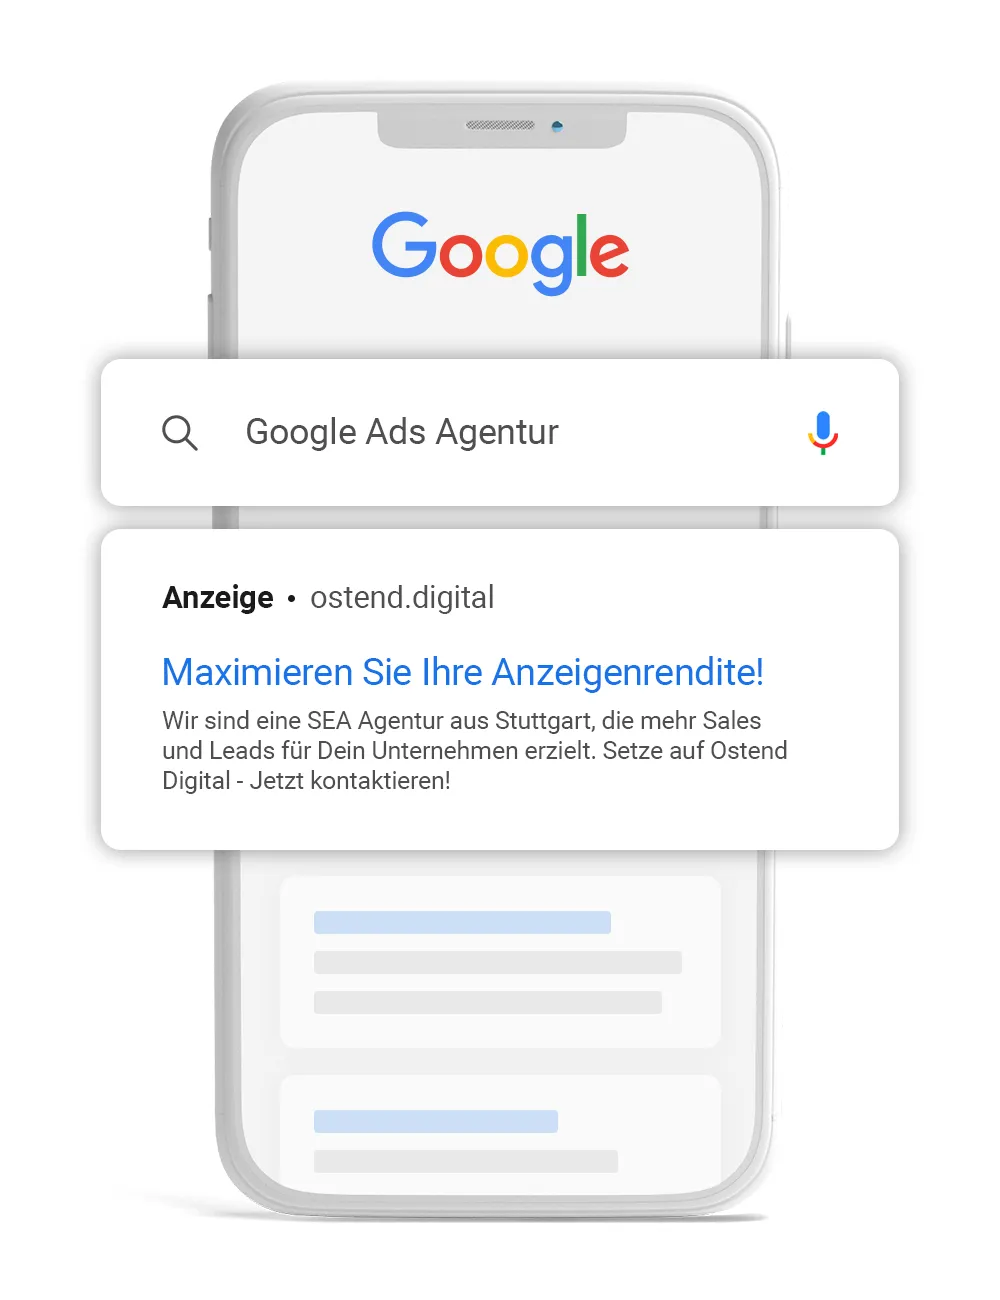 Google Ads Agentur aus Stuttgart